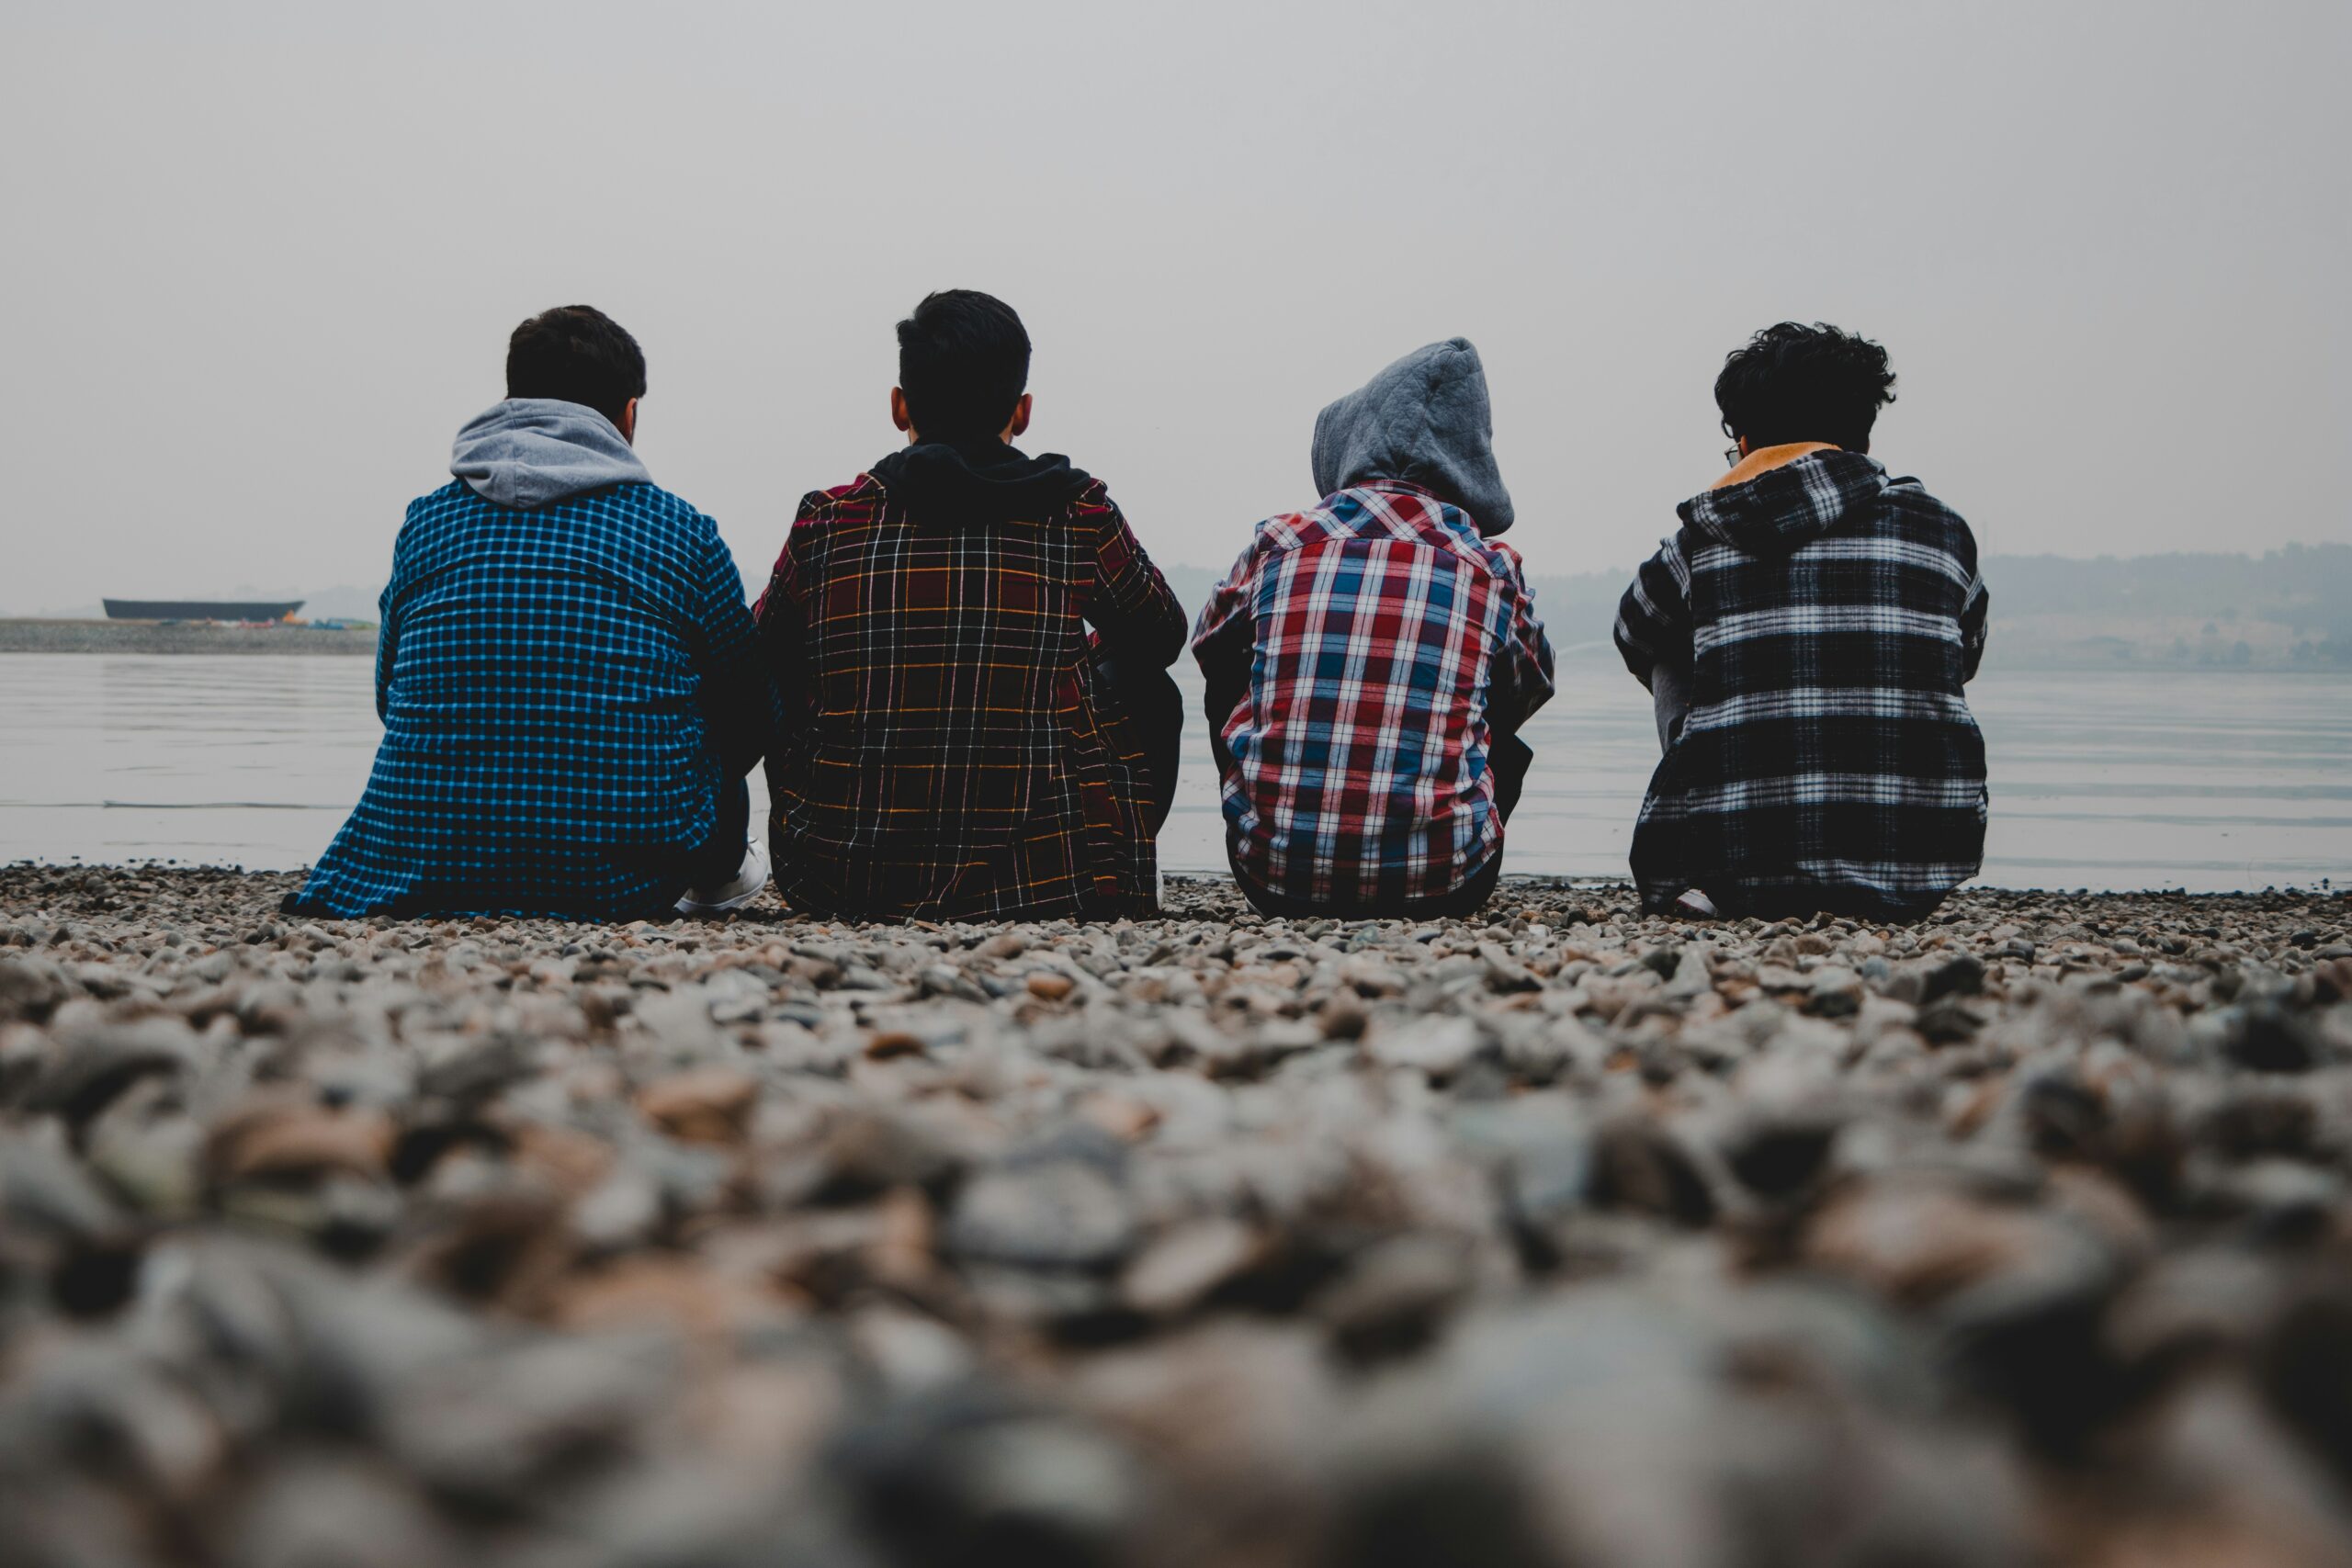 Czterech nastolatków siedzi obok siebie, opierając się plecami o kamienisty brzeg jeziora, co symbolizuje jedność i wsparcie wśród młodzieży.